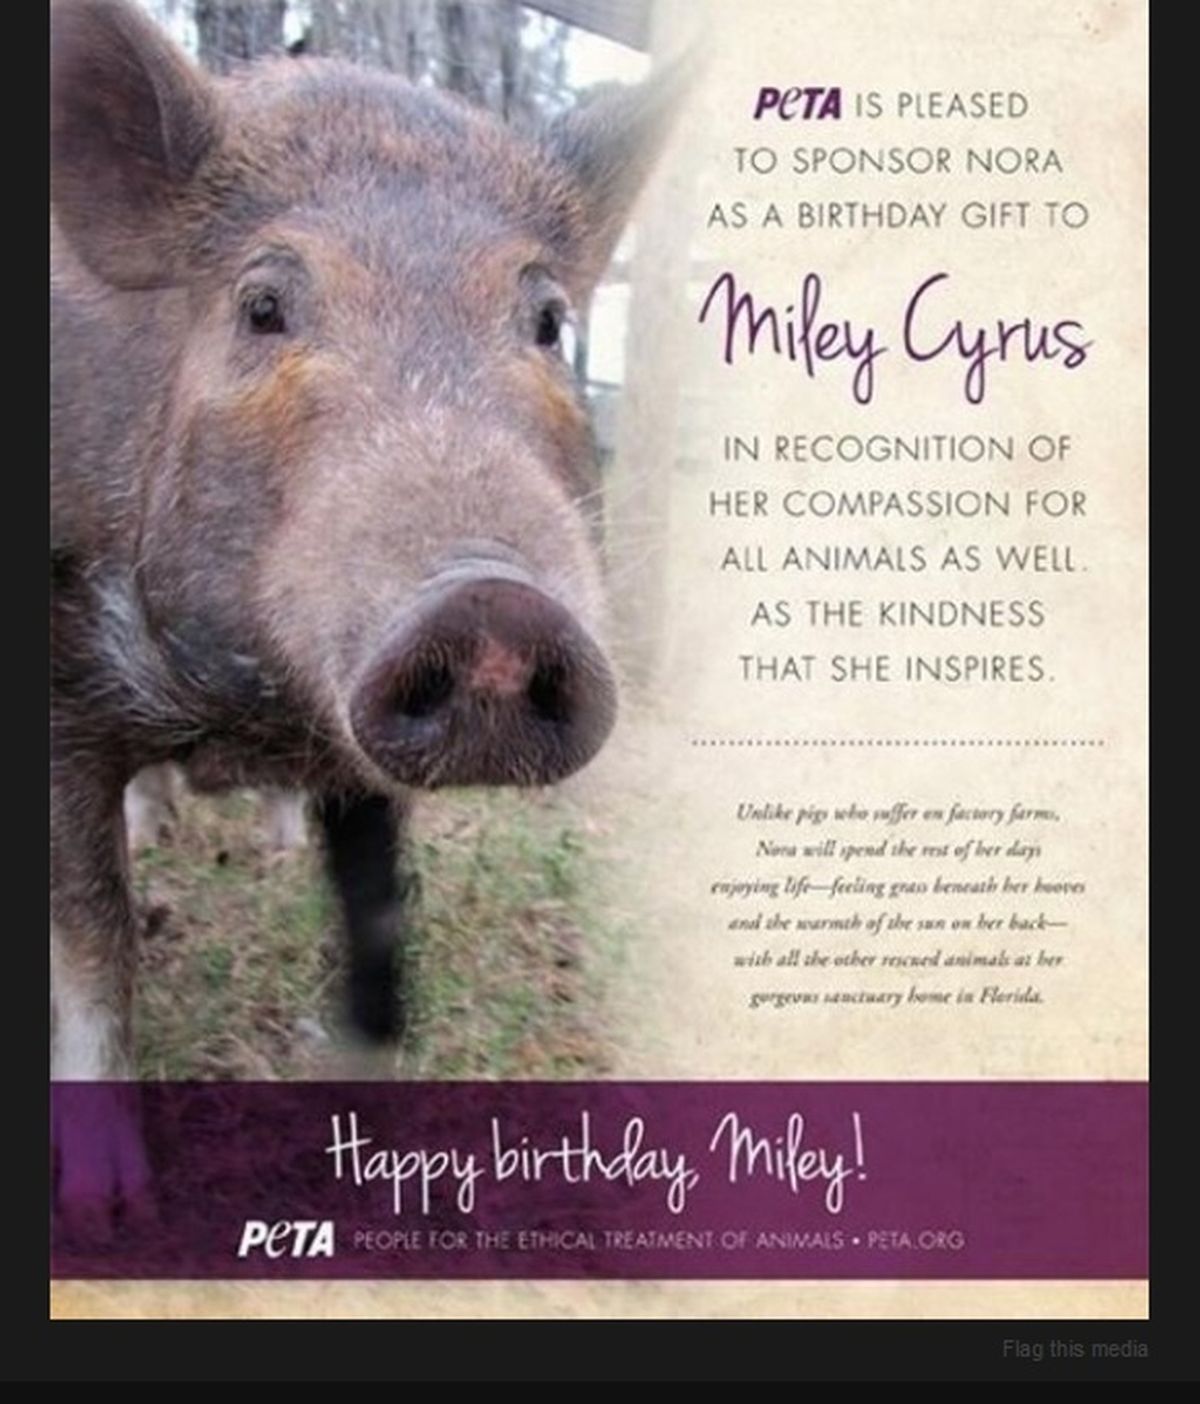 Miley Cyrus recibe un cerdo como regalo de cumpleaños